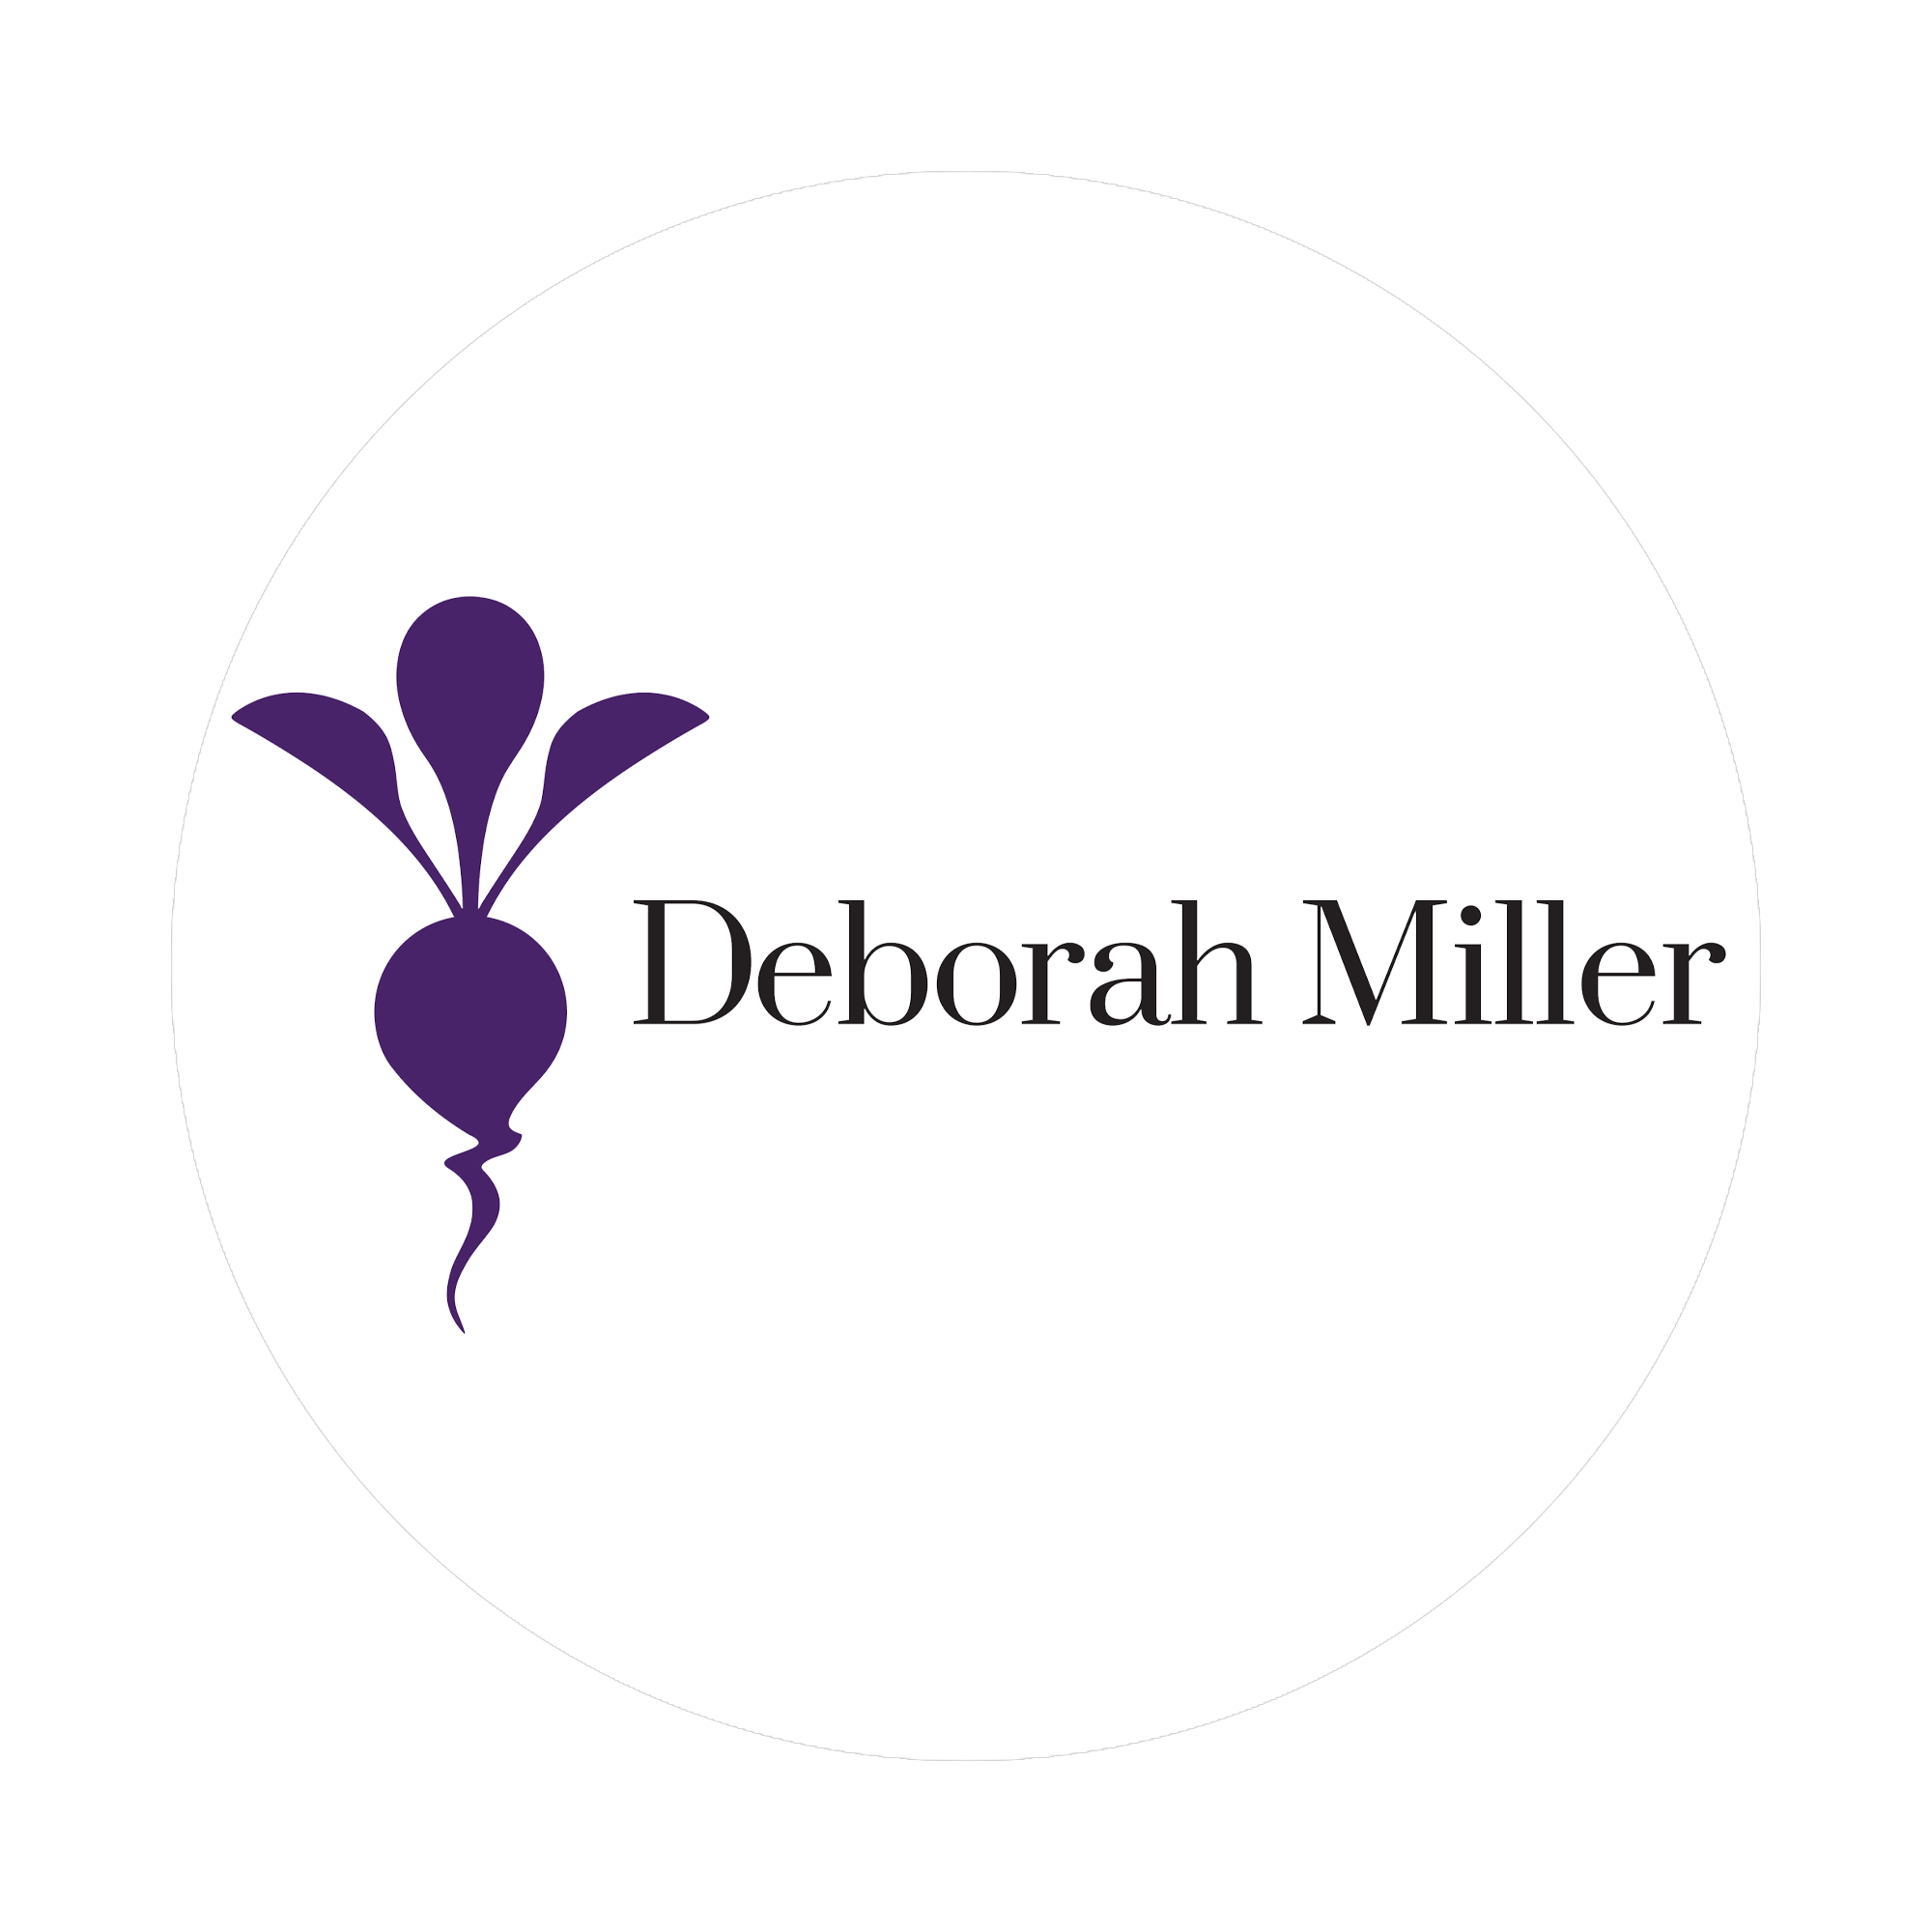 Deborah Miller Catering & Events